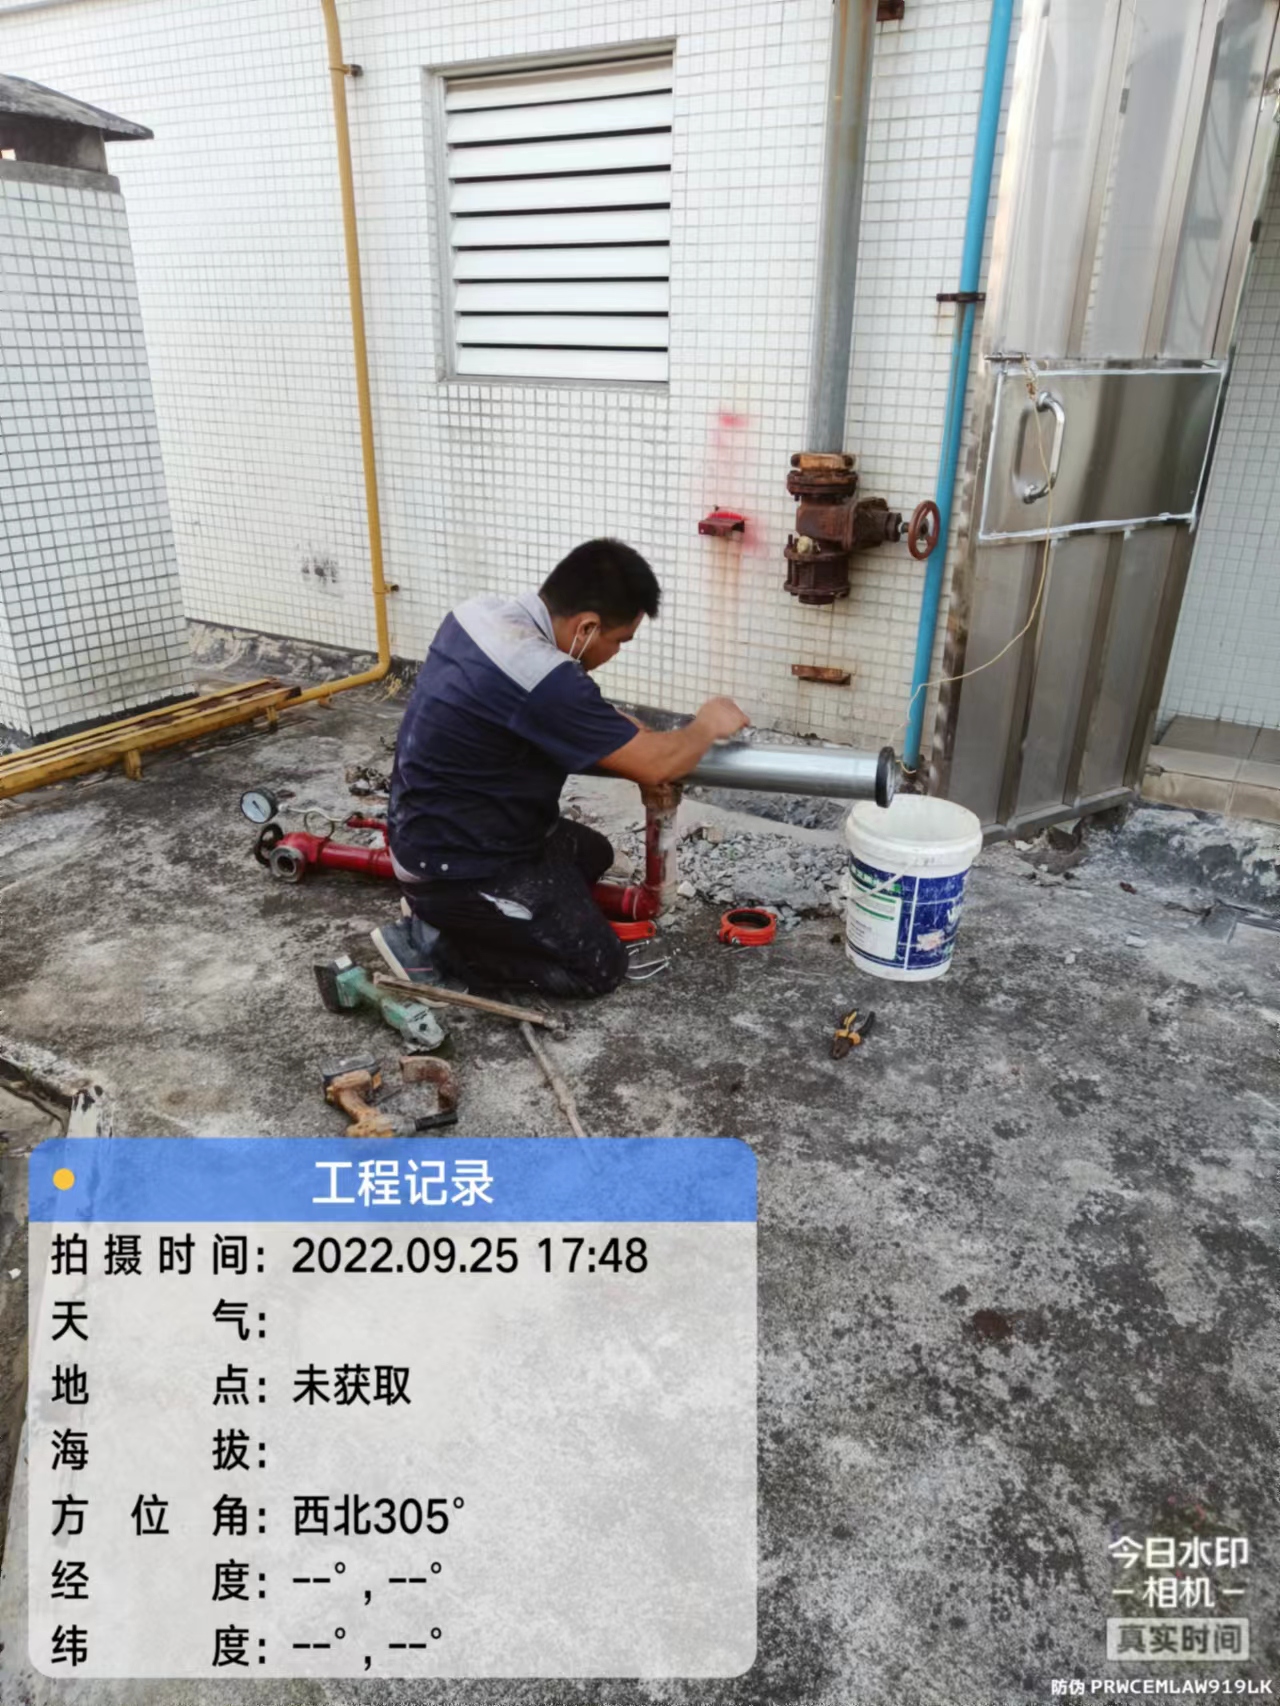 广州屋顶裂缝漏水检测公司、维修、报价、处理、热线